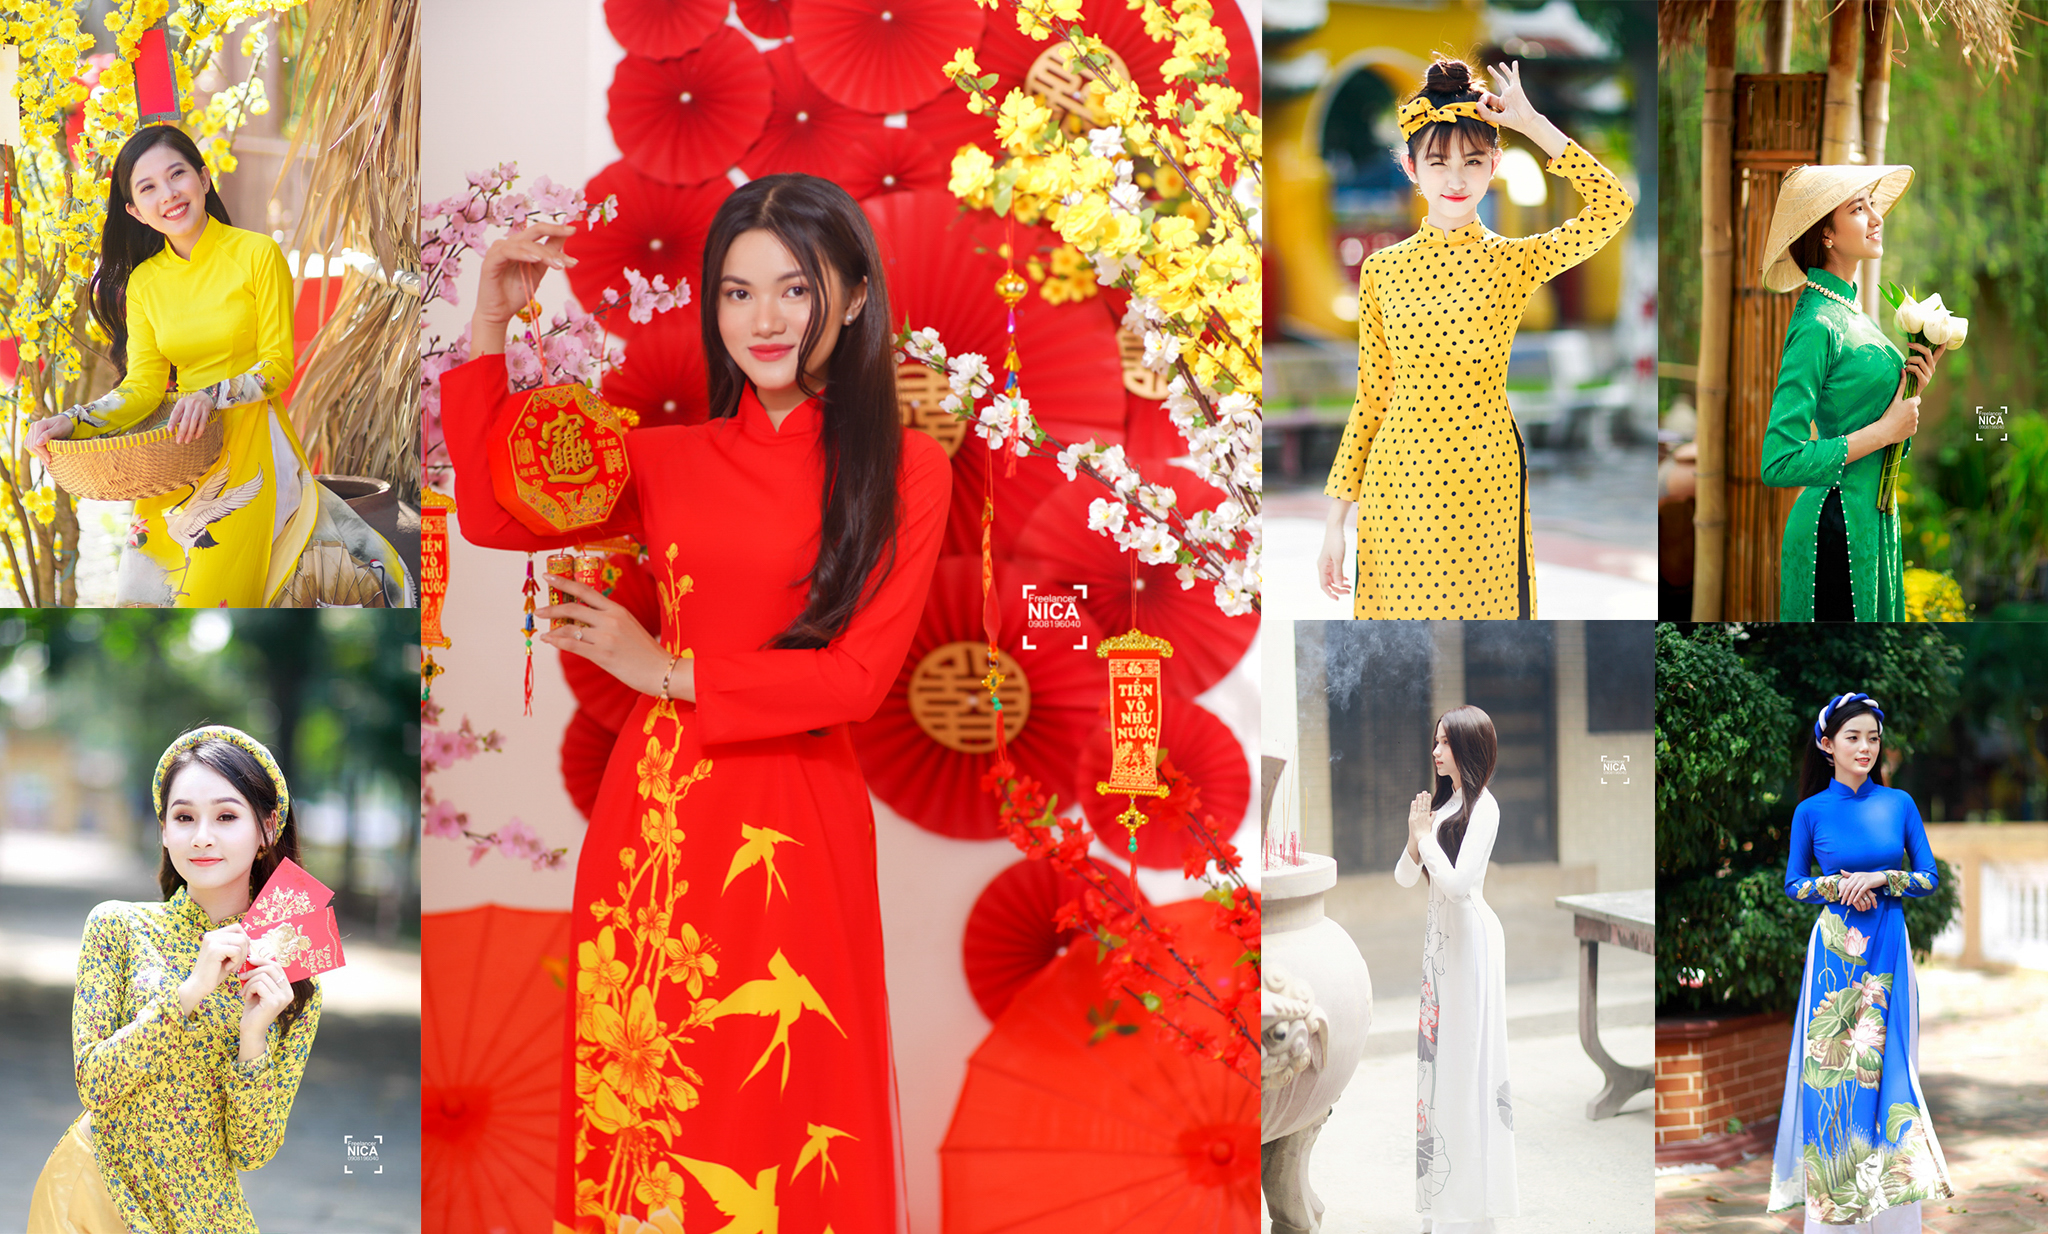 Bán thuê áo dài đẹp ở tỉnh Đồng Nai – Cho thuê áo dài tại Đồng Nai